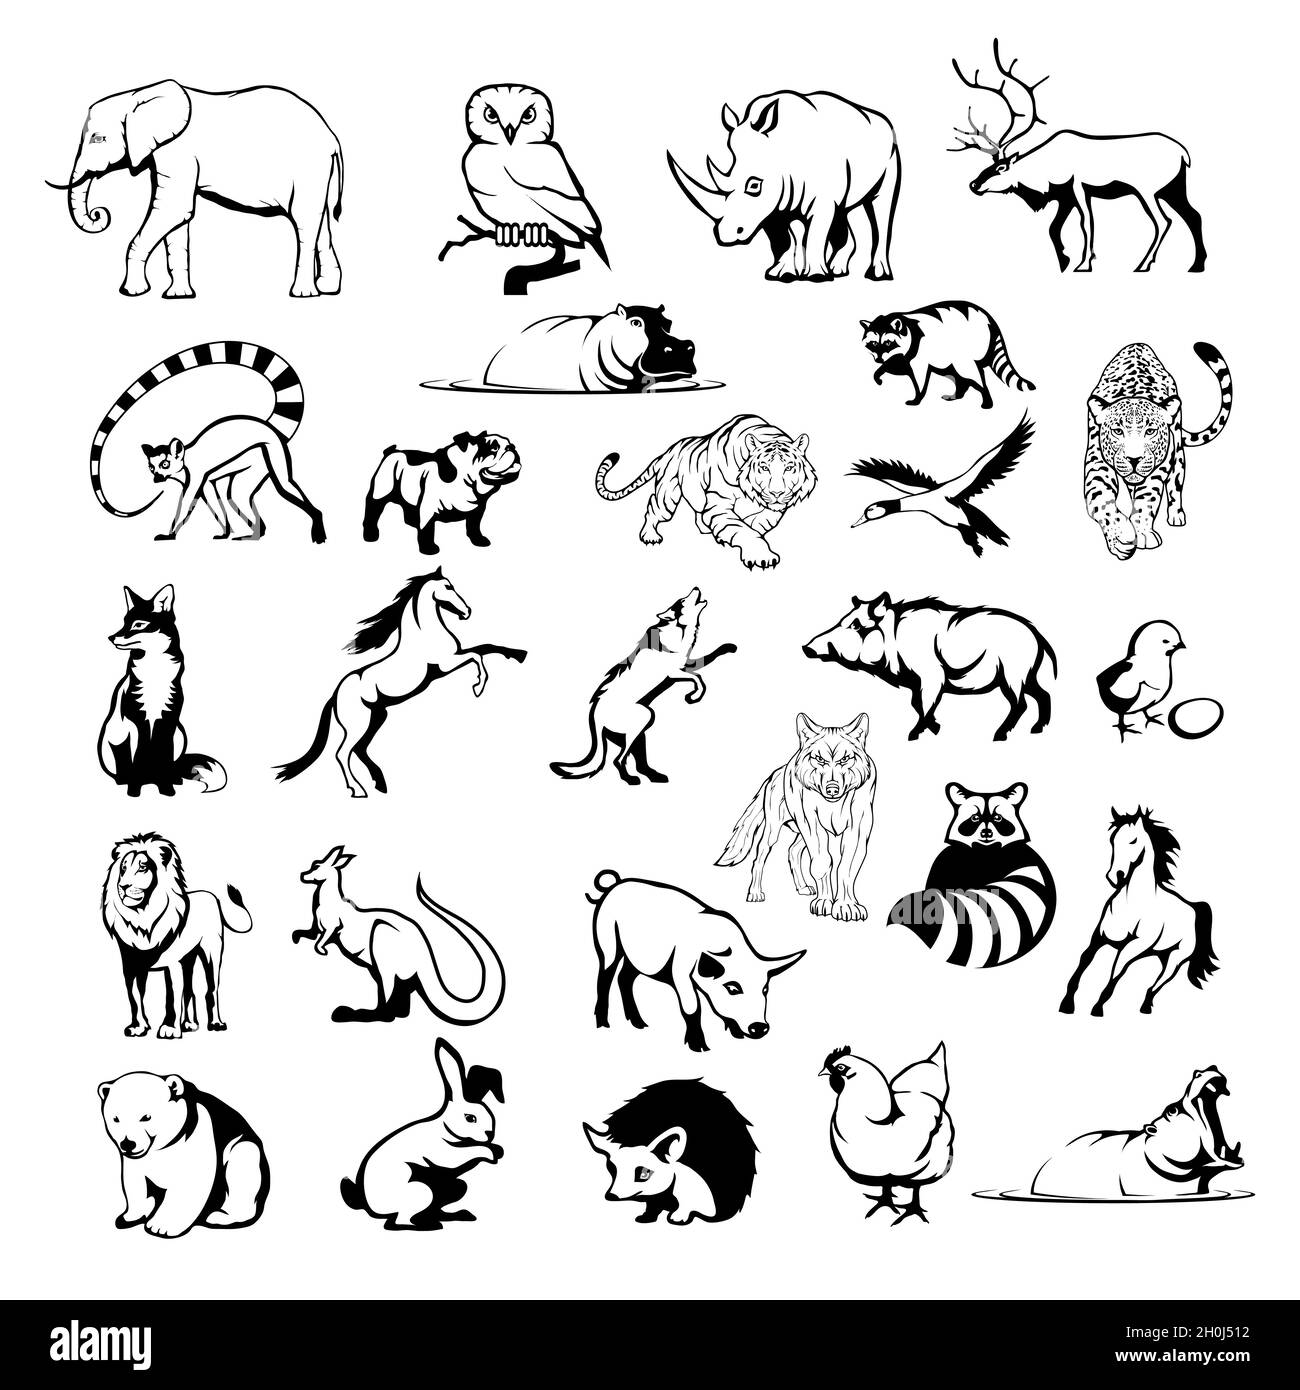 Animales domesticos y salvajes Imágenes de stock en blanco y negro - Alamy